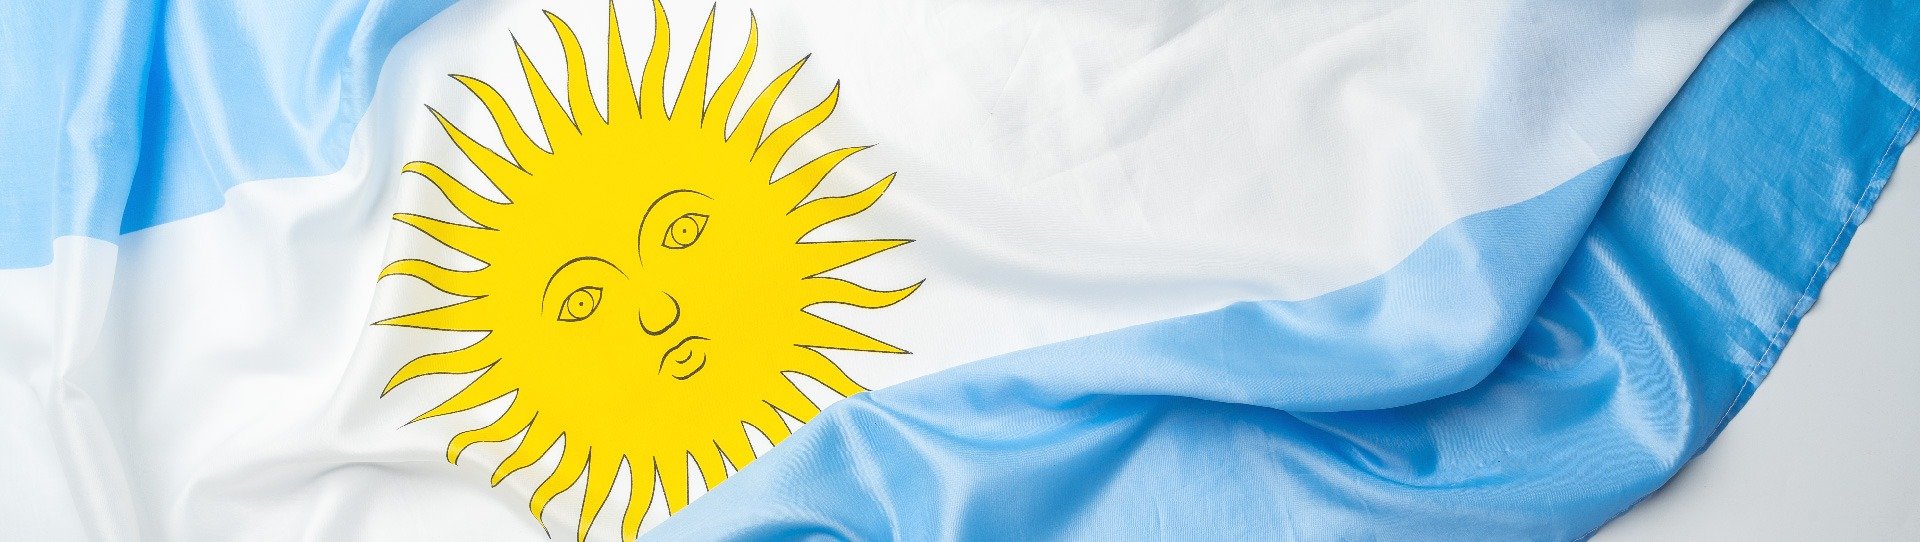 Celebremos el Dia de la Bandera Argentina con el Maridaje Perfecto, Vino y  Tradiciones - Sol y Vino Mendoza